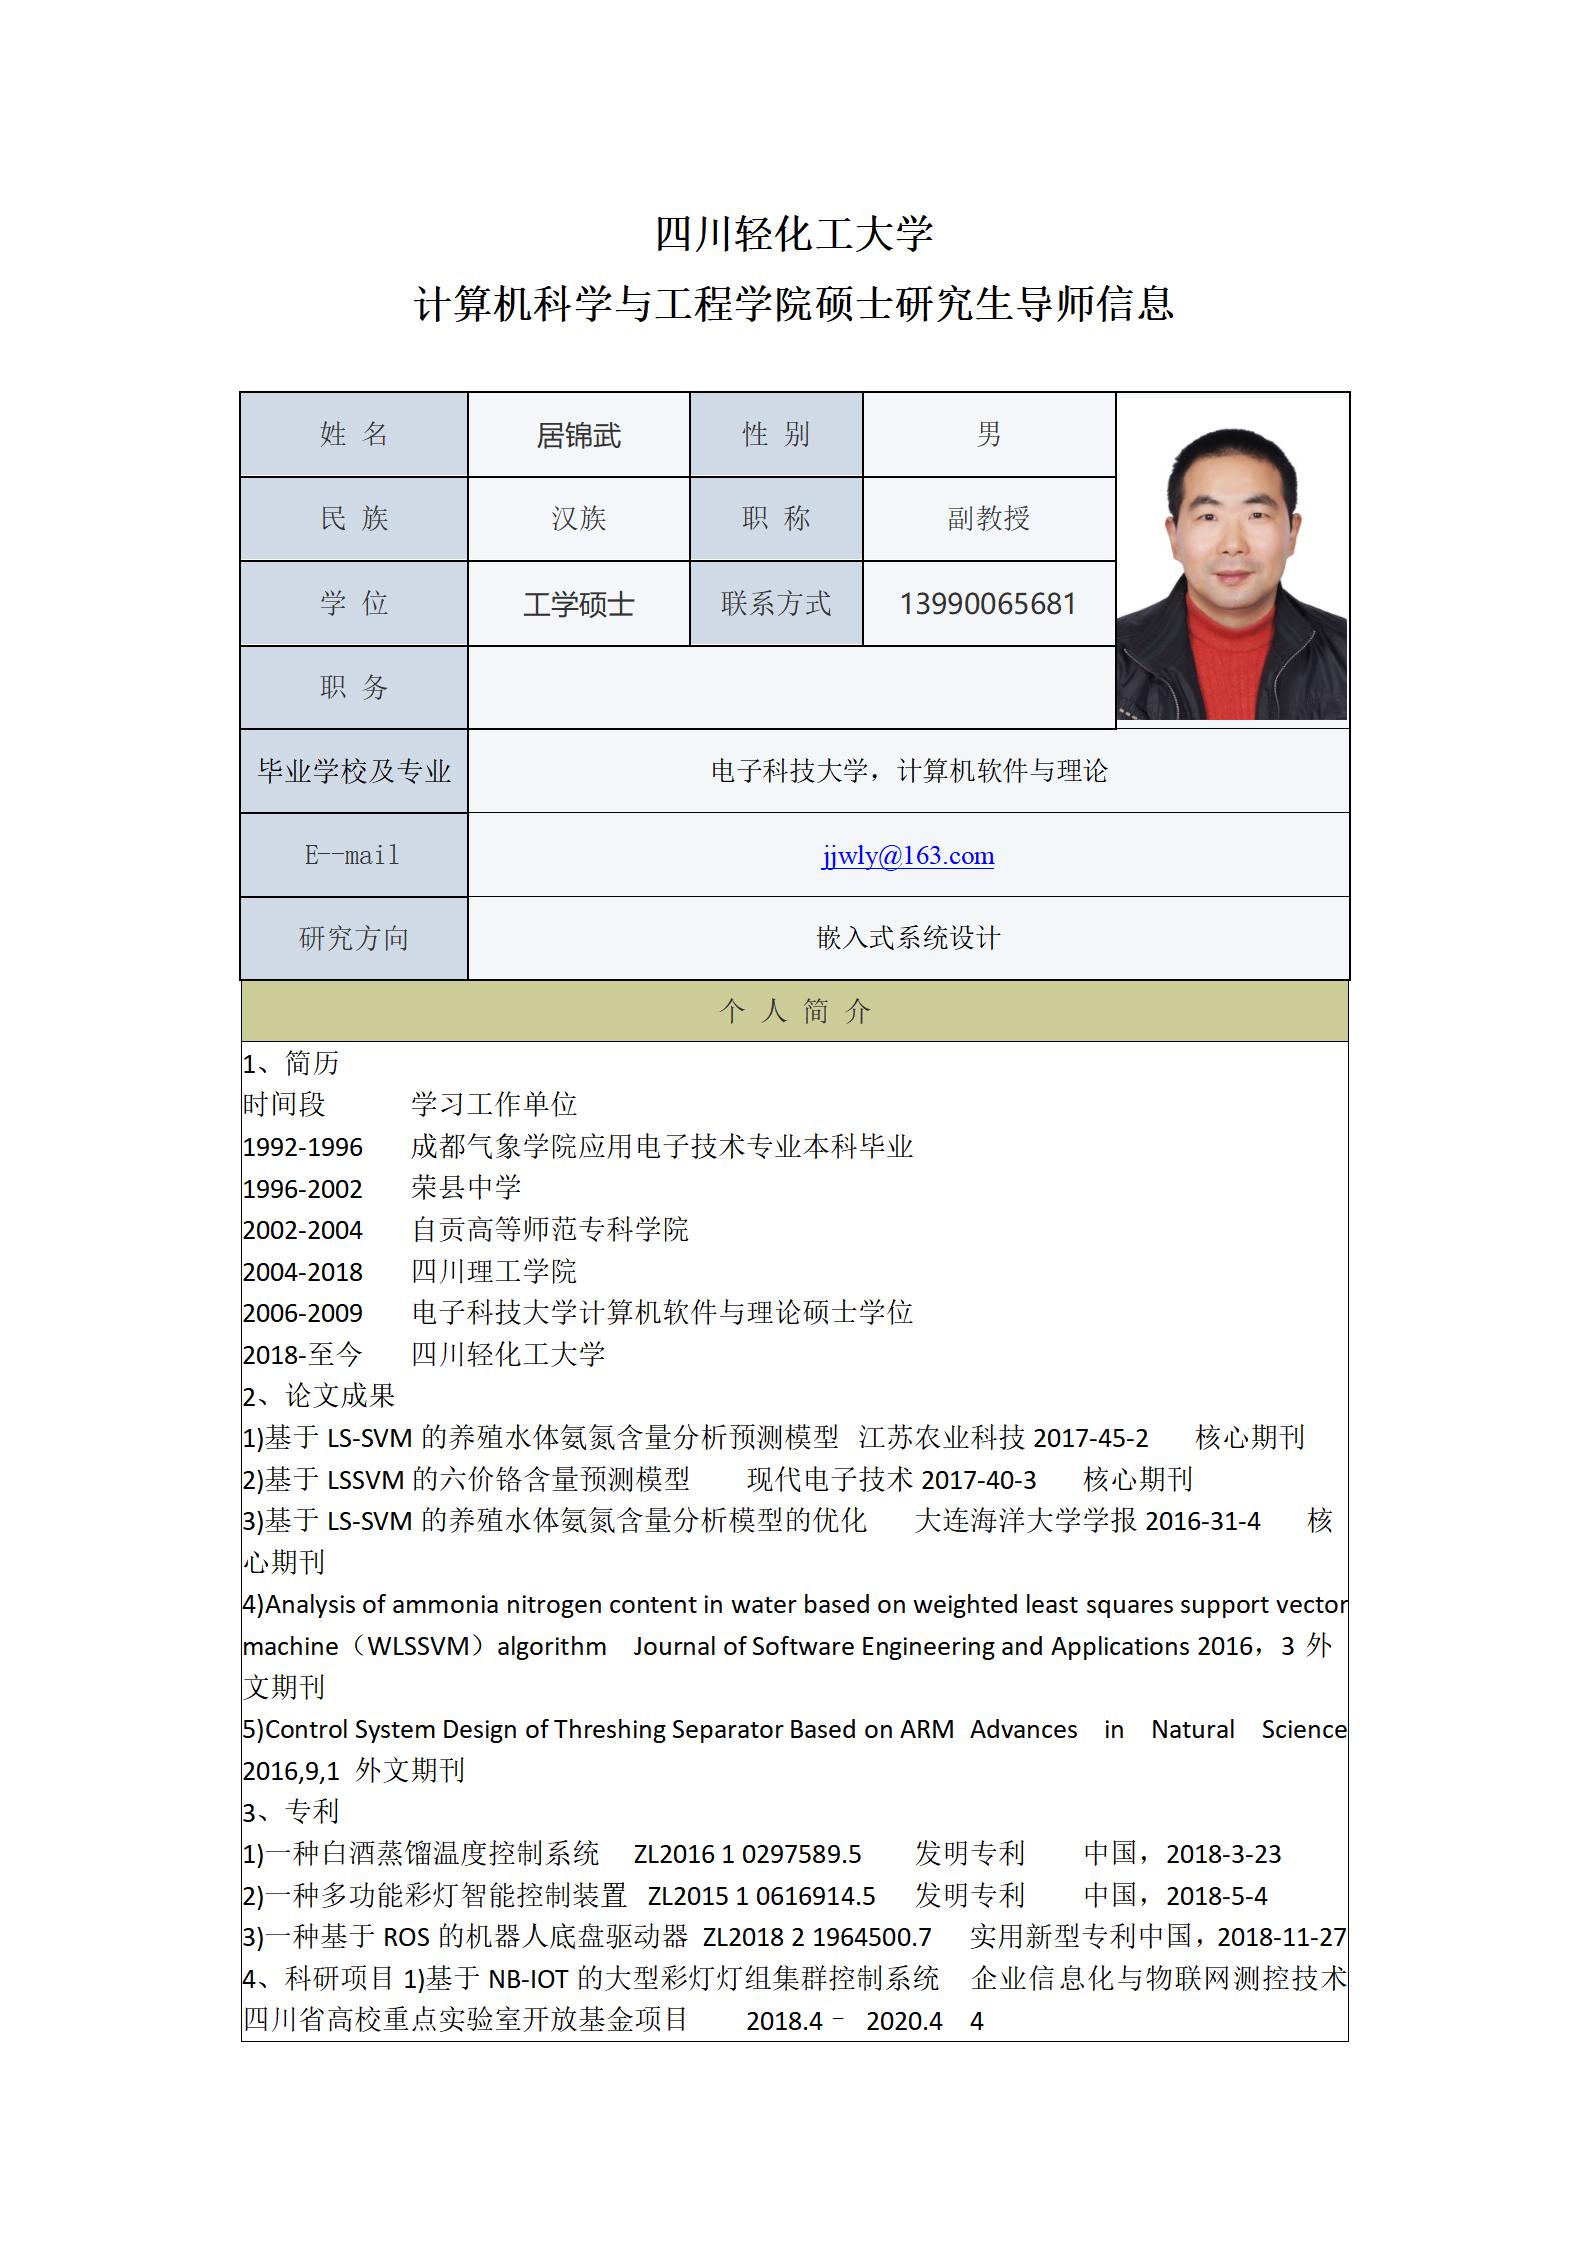 居锦武-2021计算机科学与工程学院硕士生导师信息表_01.jpg